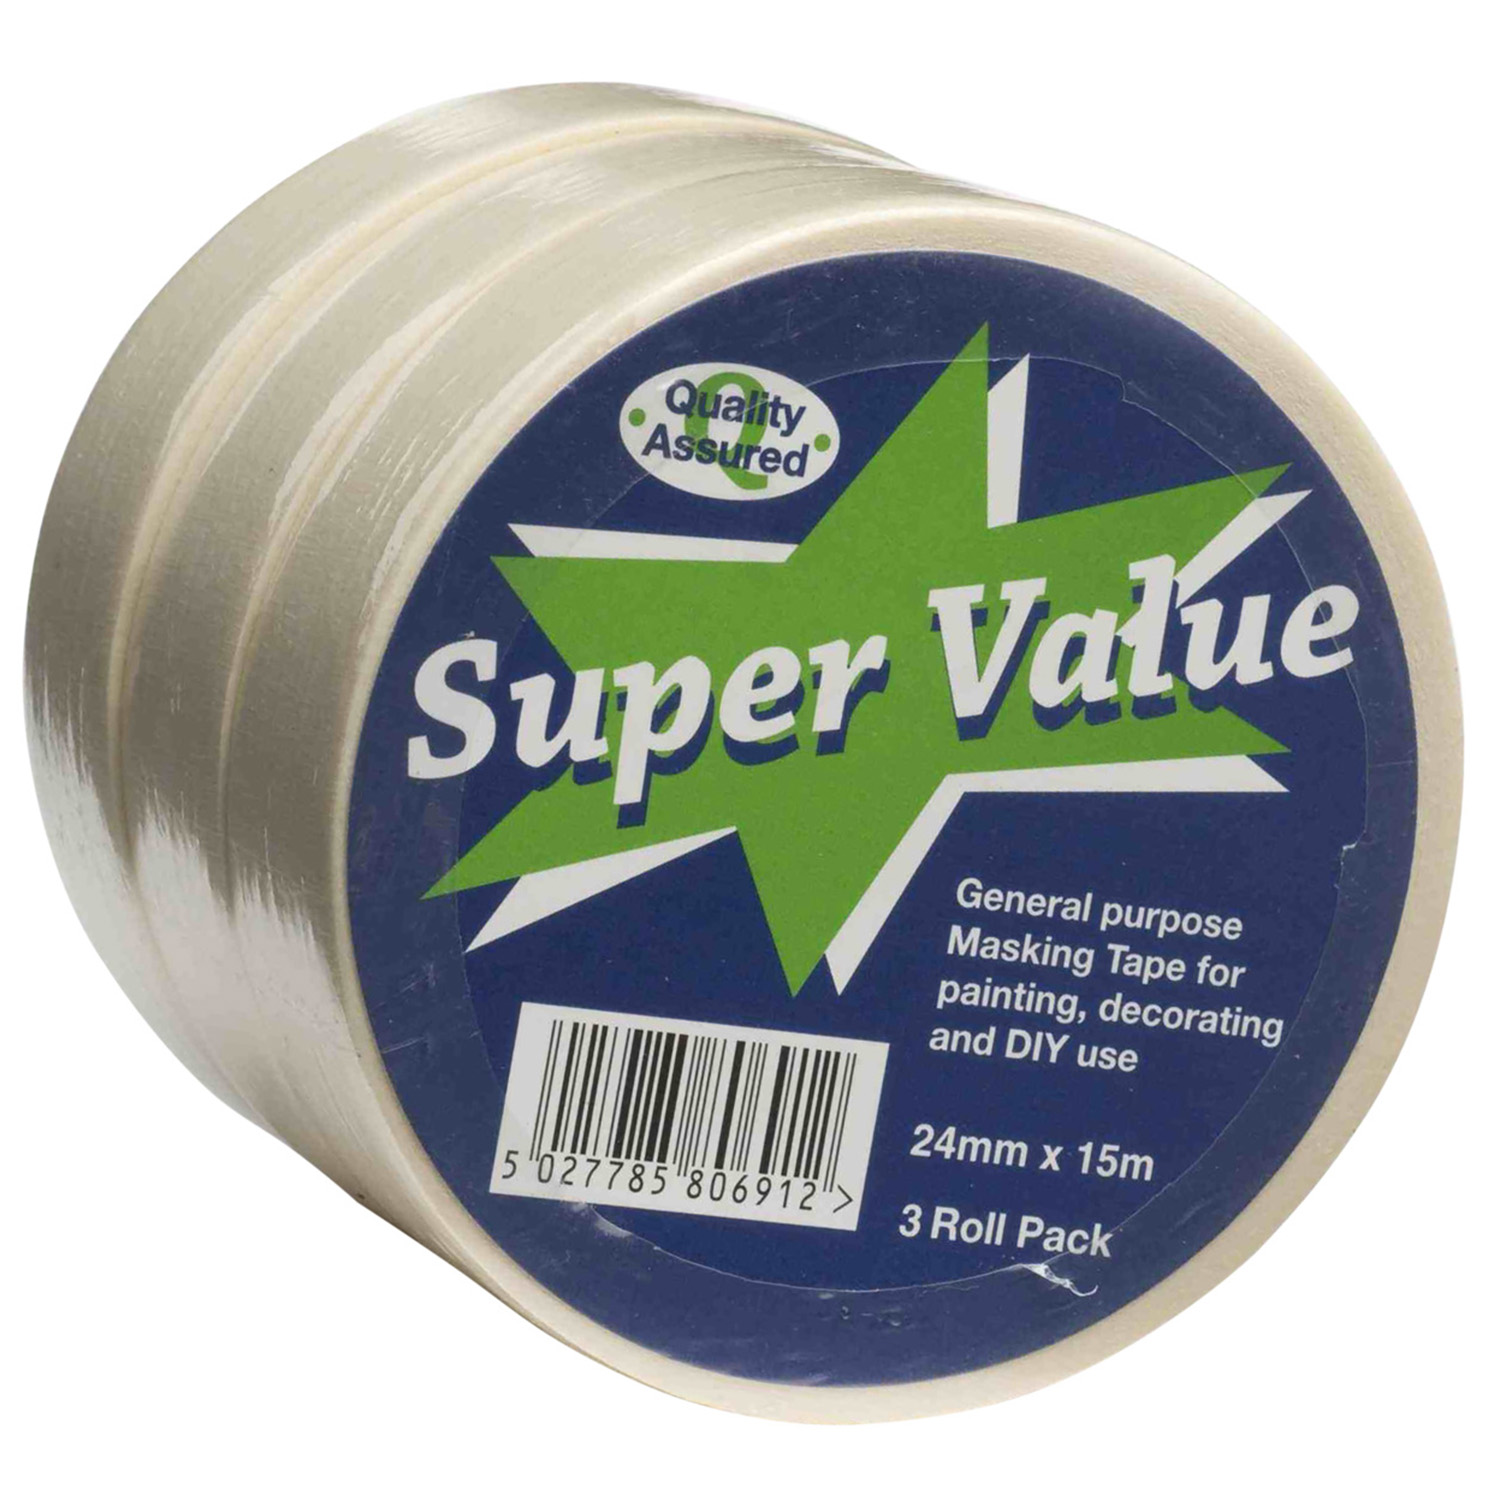 Super Value 24mm x 15m Masking Tape 3 Pack Image